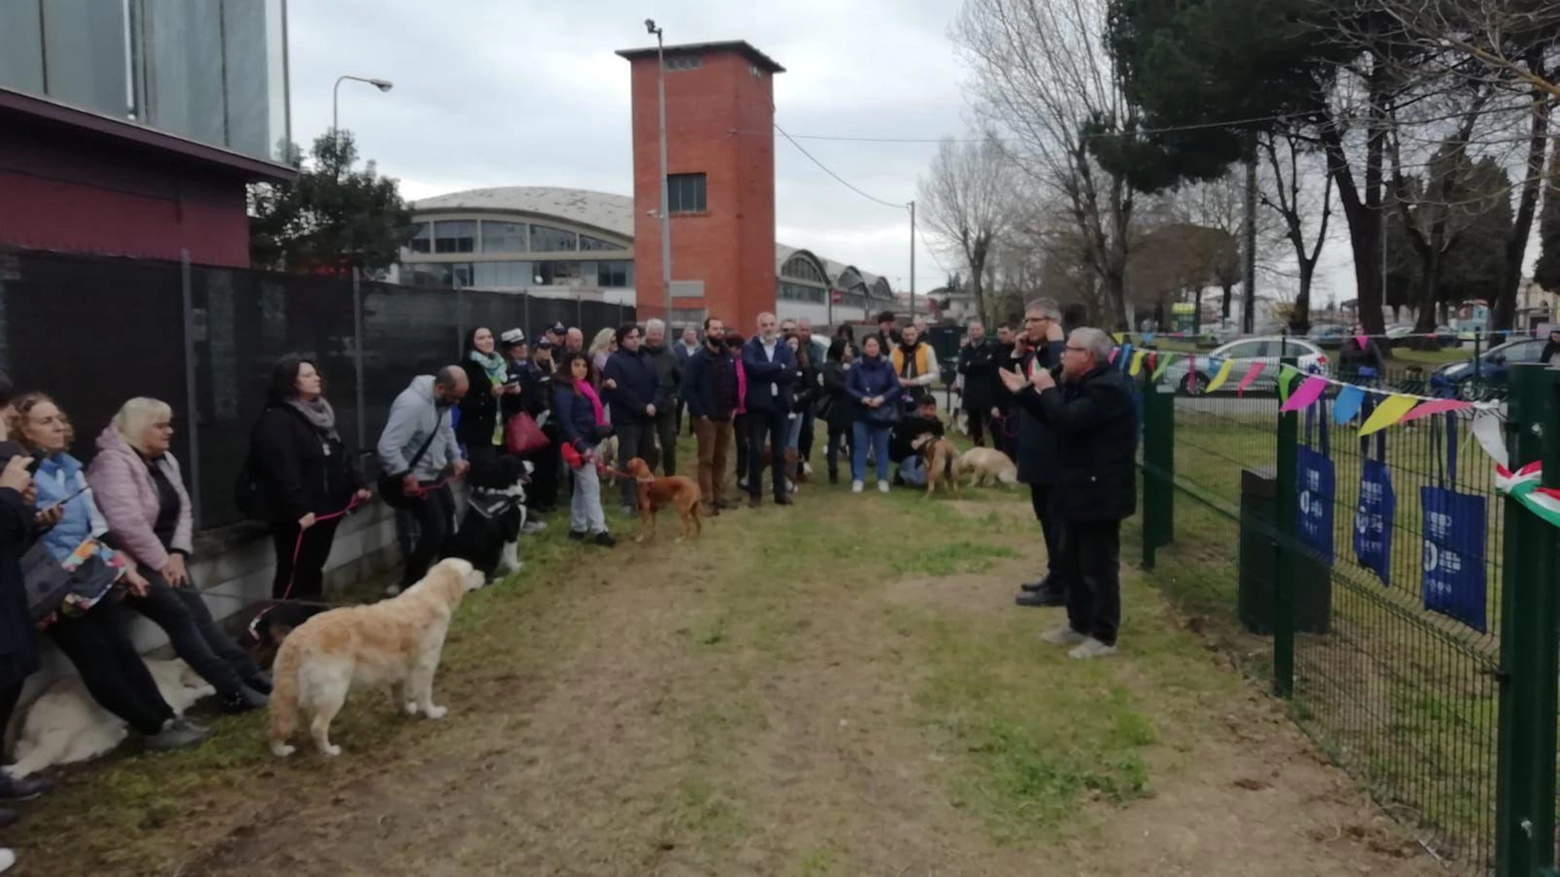 Taglio del nastro a Calcinaia per due campi attrezzati per i cani. Il sindaco Alderigi: "Una bella giornata per tutti i cinofili"